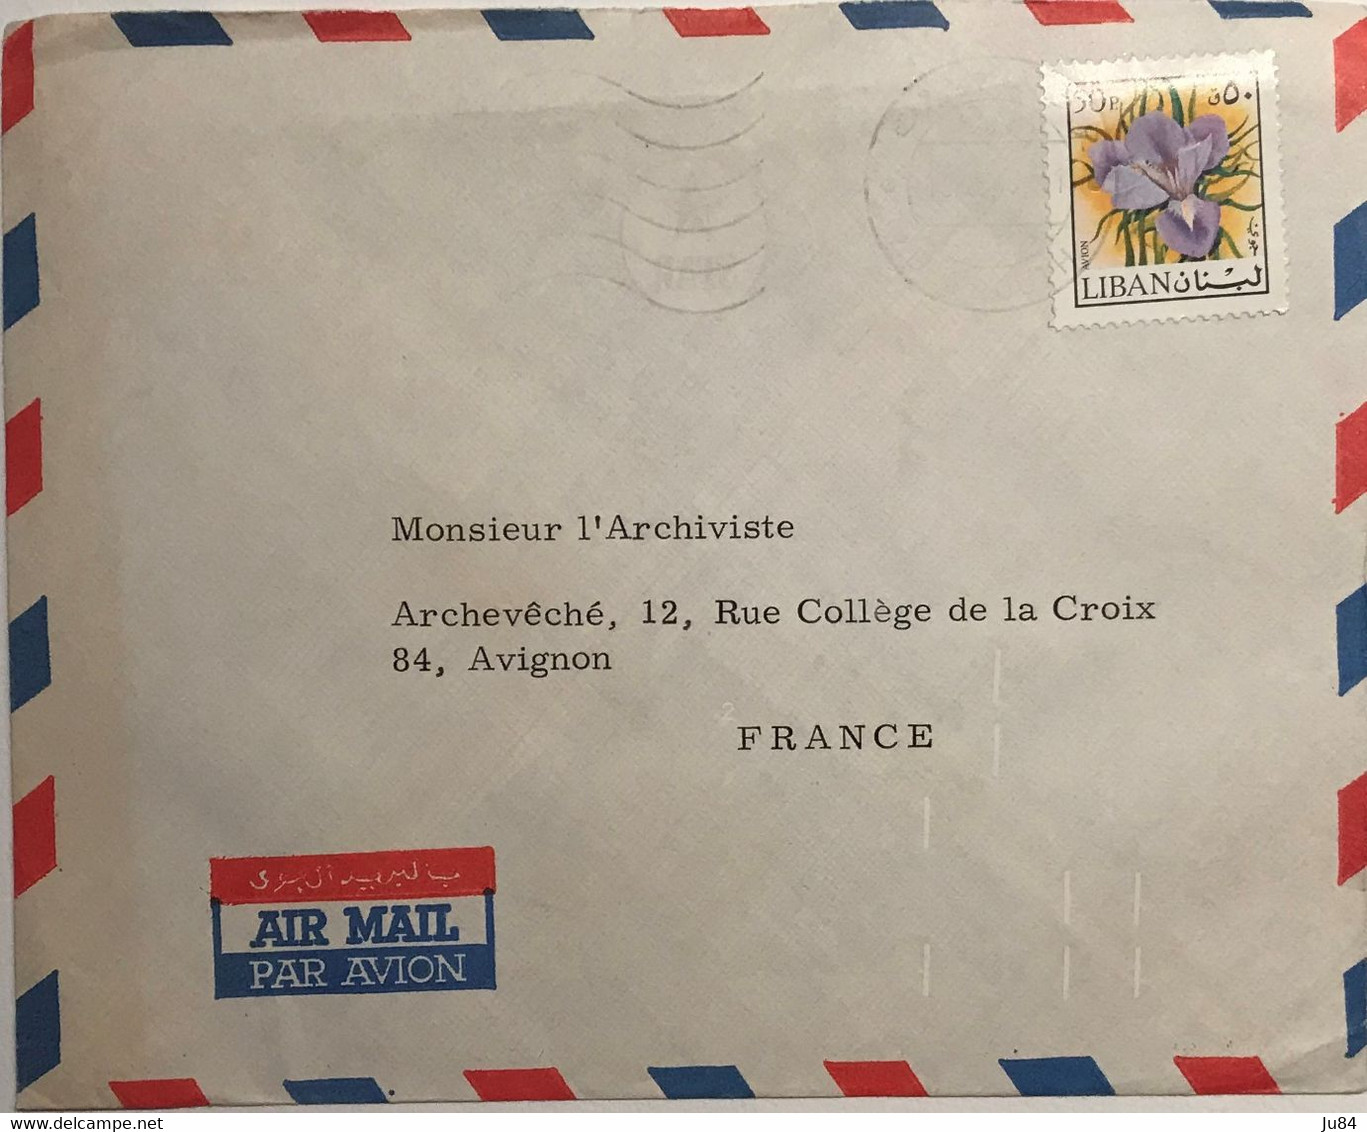 Liban - Beyrouth - Lettre De L'Archevêché Maronite De Beyrouth Avion Pour L'Archiviste D'Avignon (France) - Lebanon